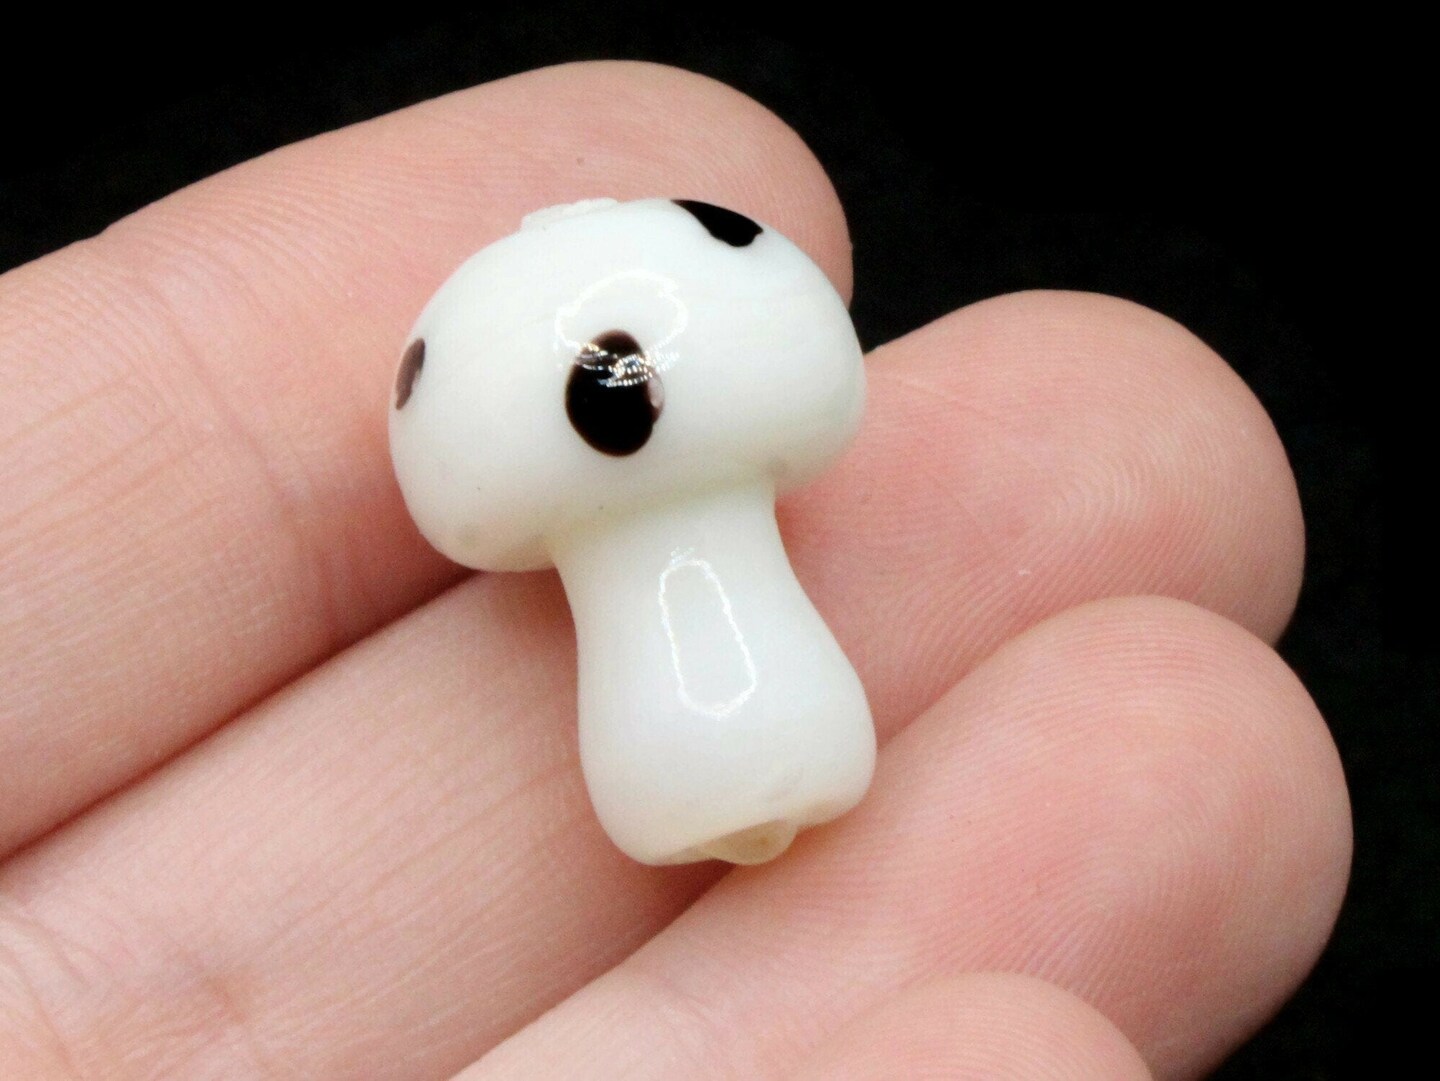 6 19mm White Mushroom Polka Dot Lampwork Glass Beads